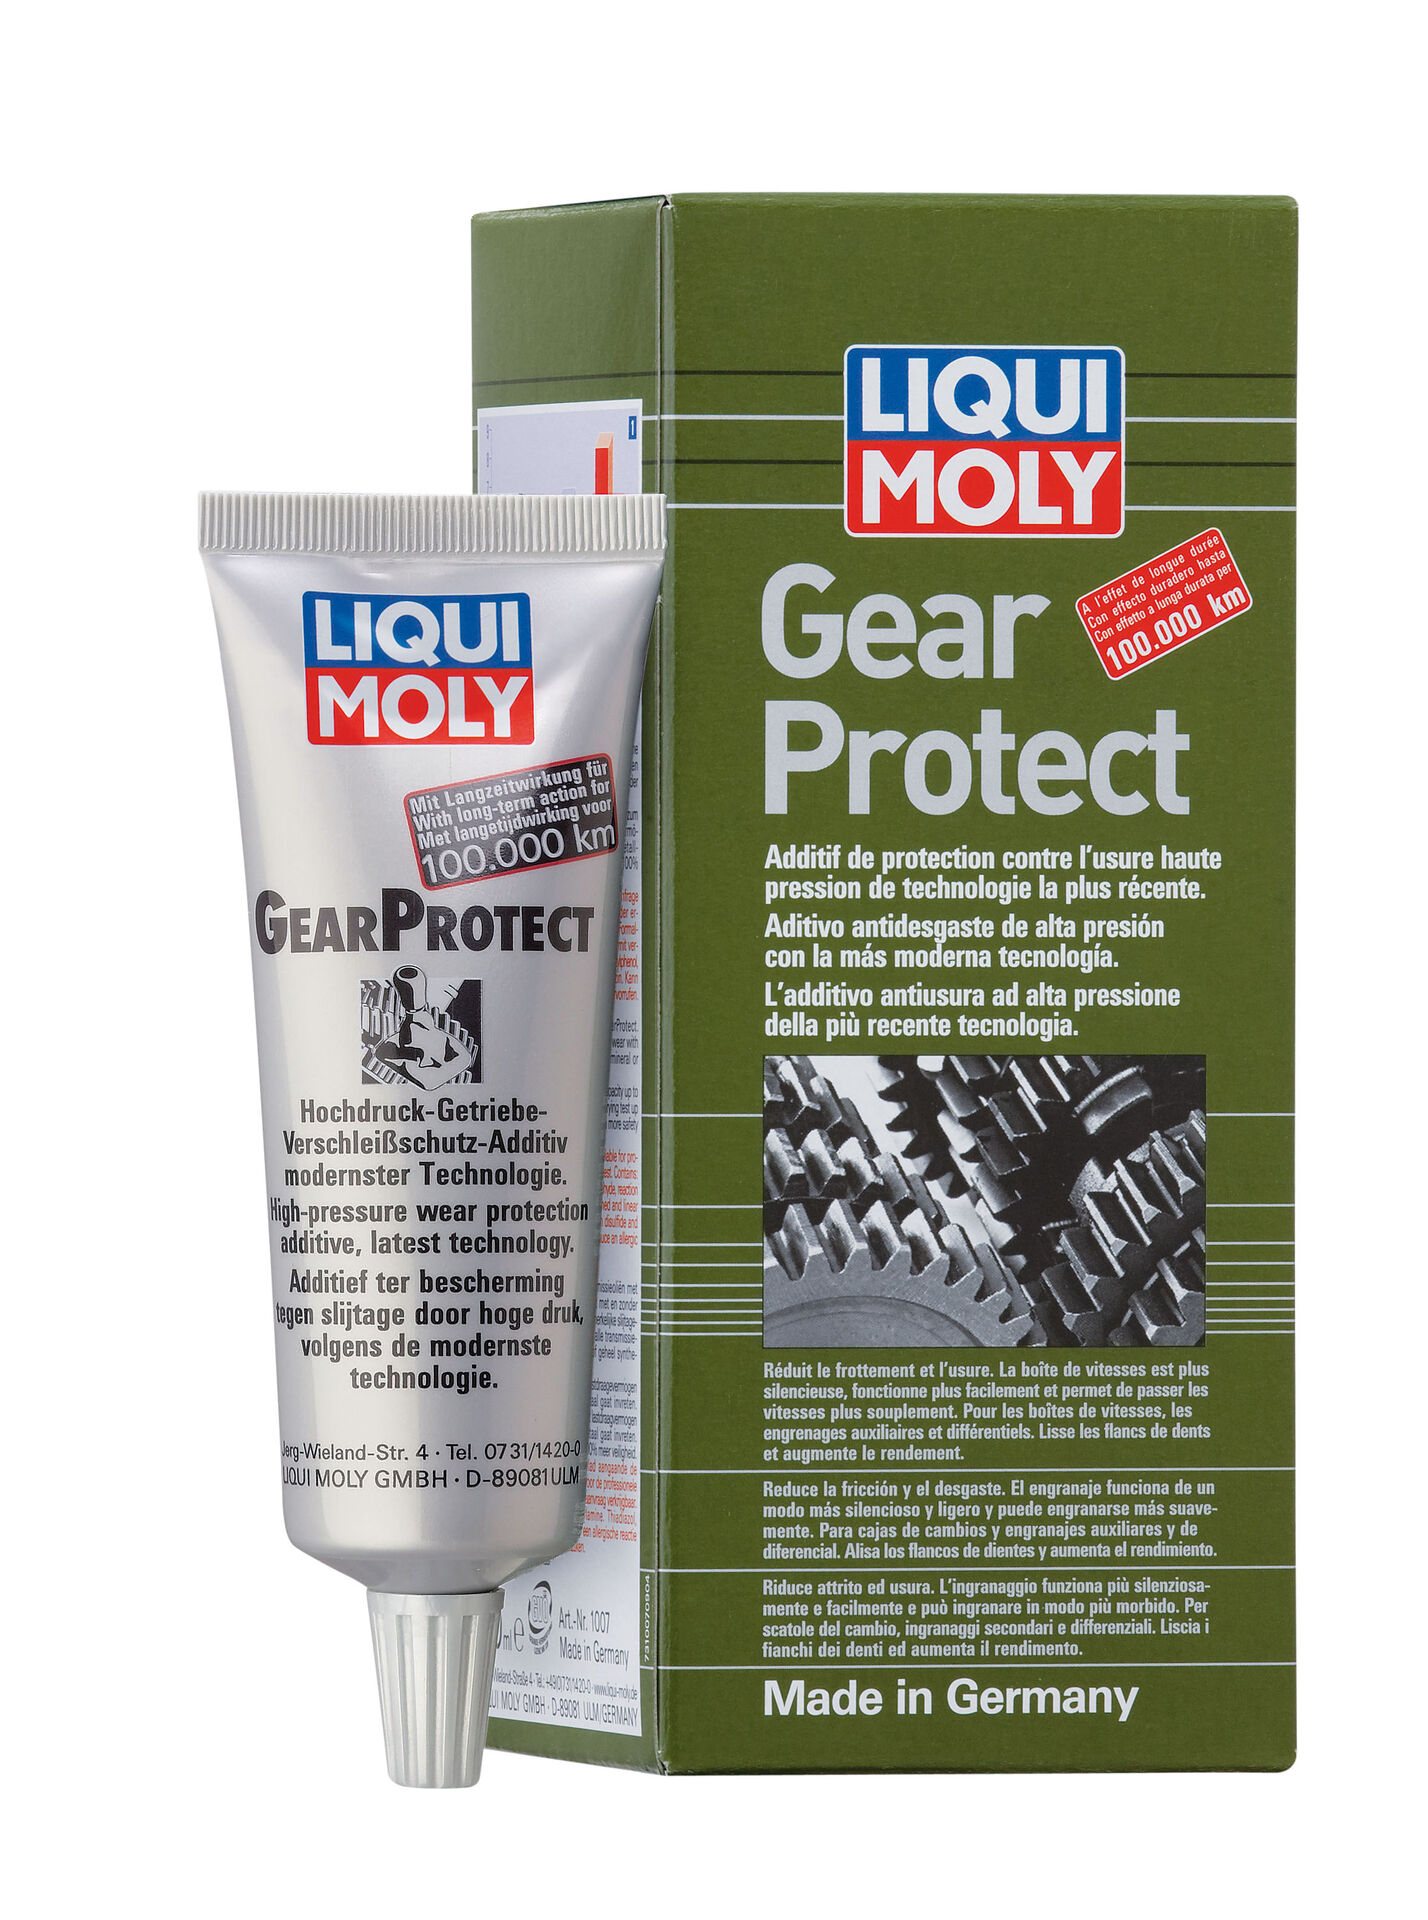 80ml LIQUI MOLY 1007 Gear Protect Additiv Getriebeöl Verschleißschutz